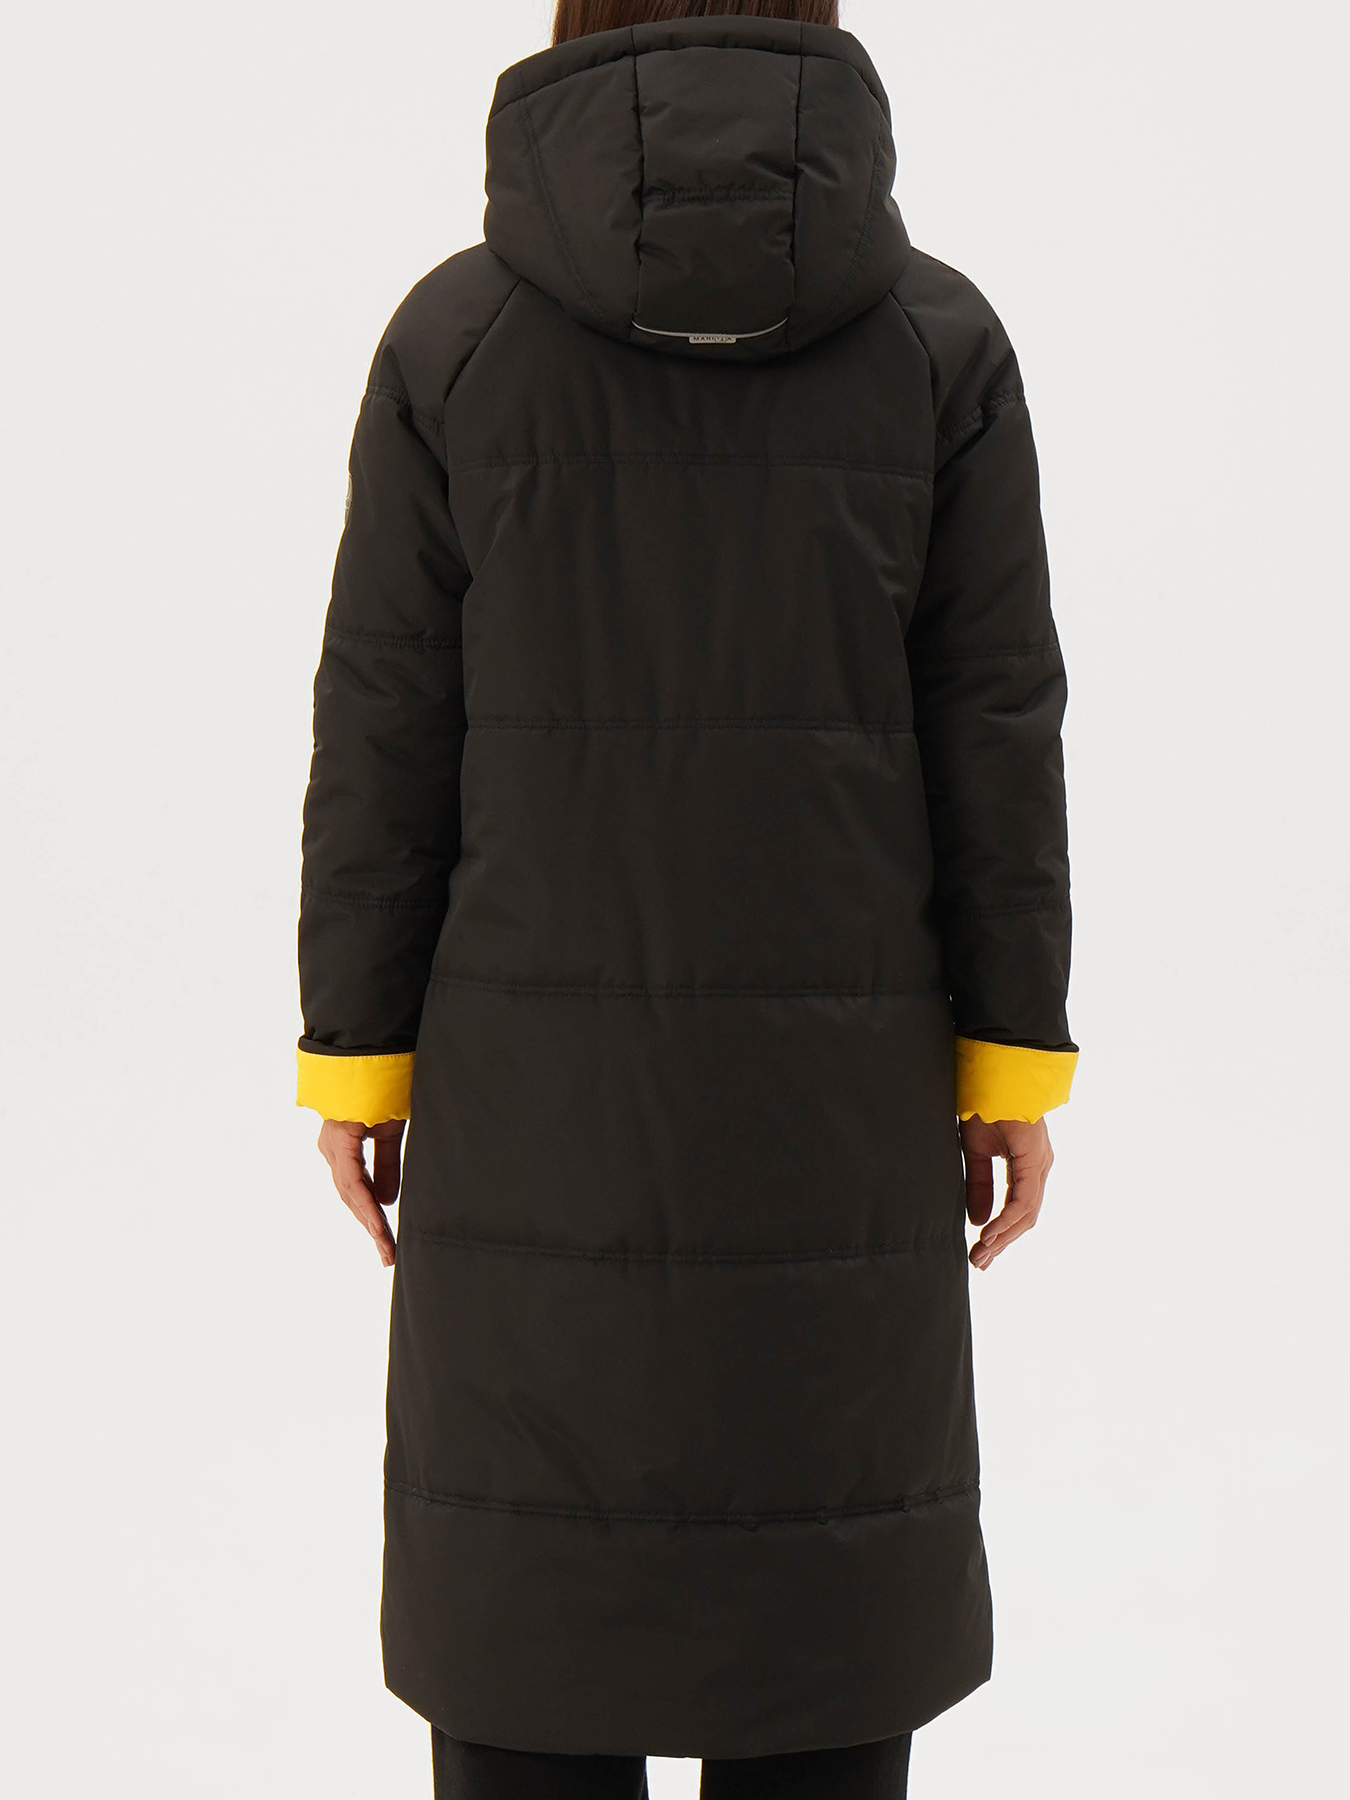 Пальто зимнее Maritta 433538-020, цвет черный, размер 44 - фото 2